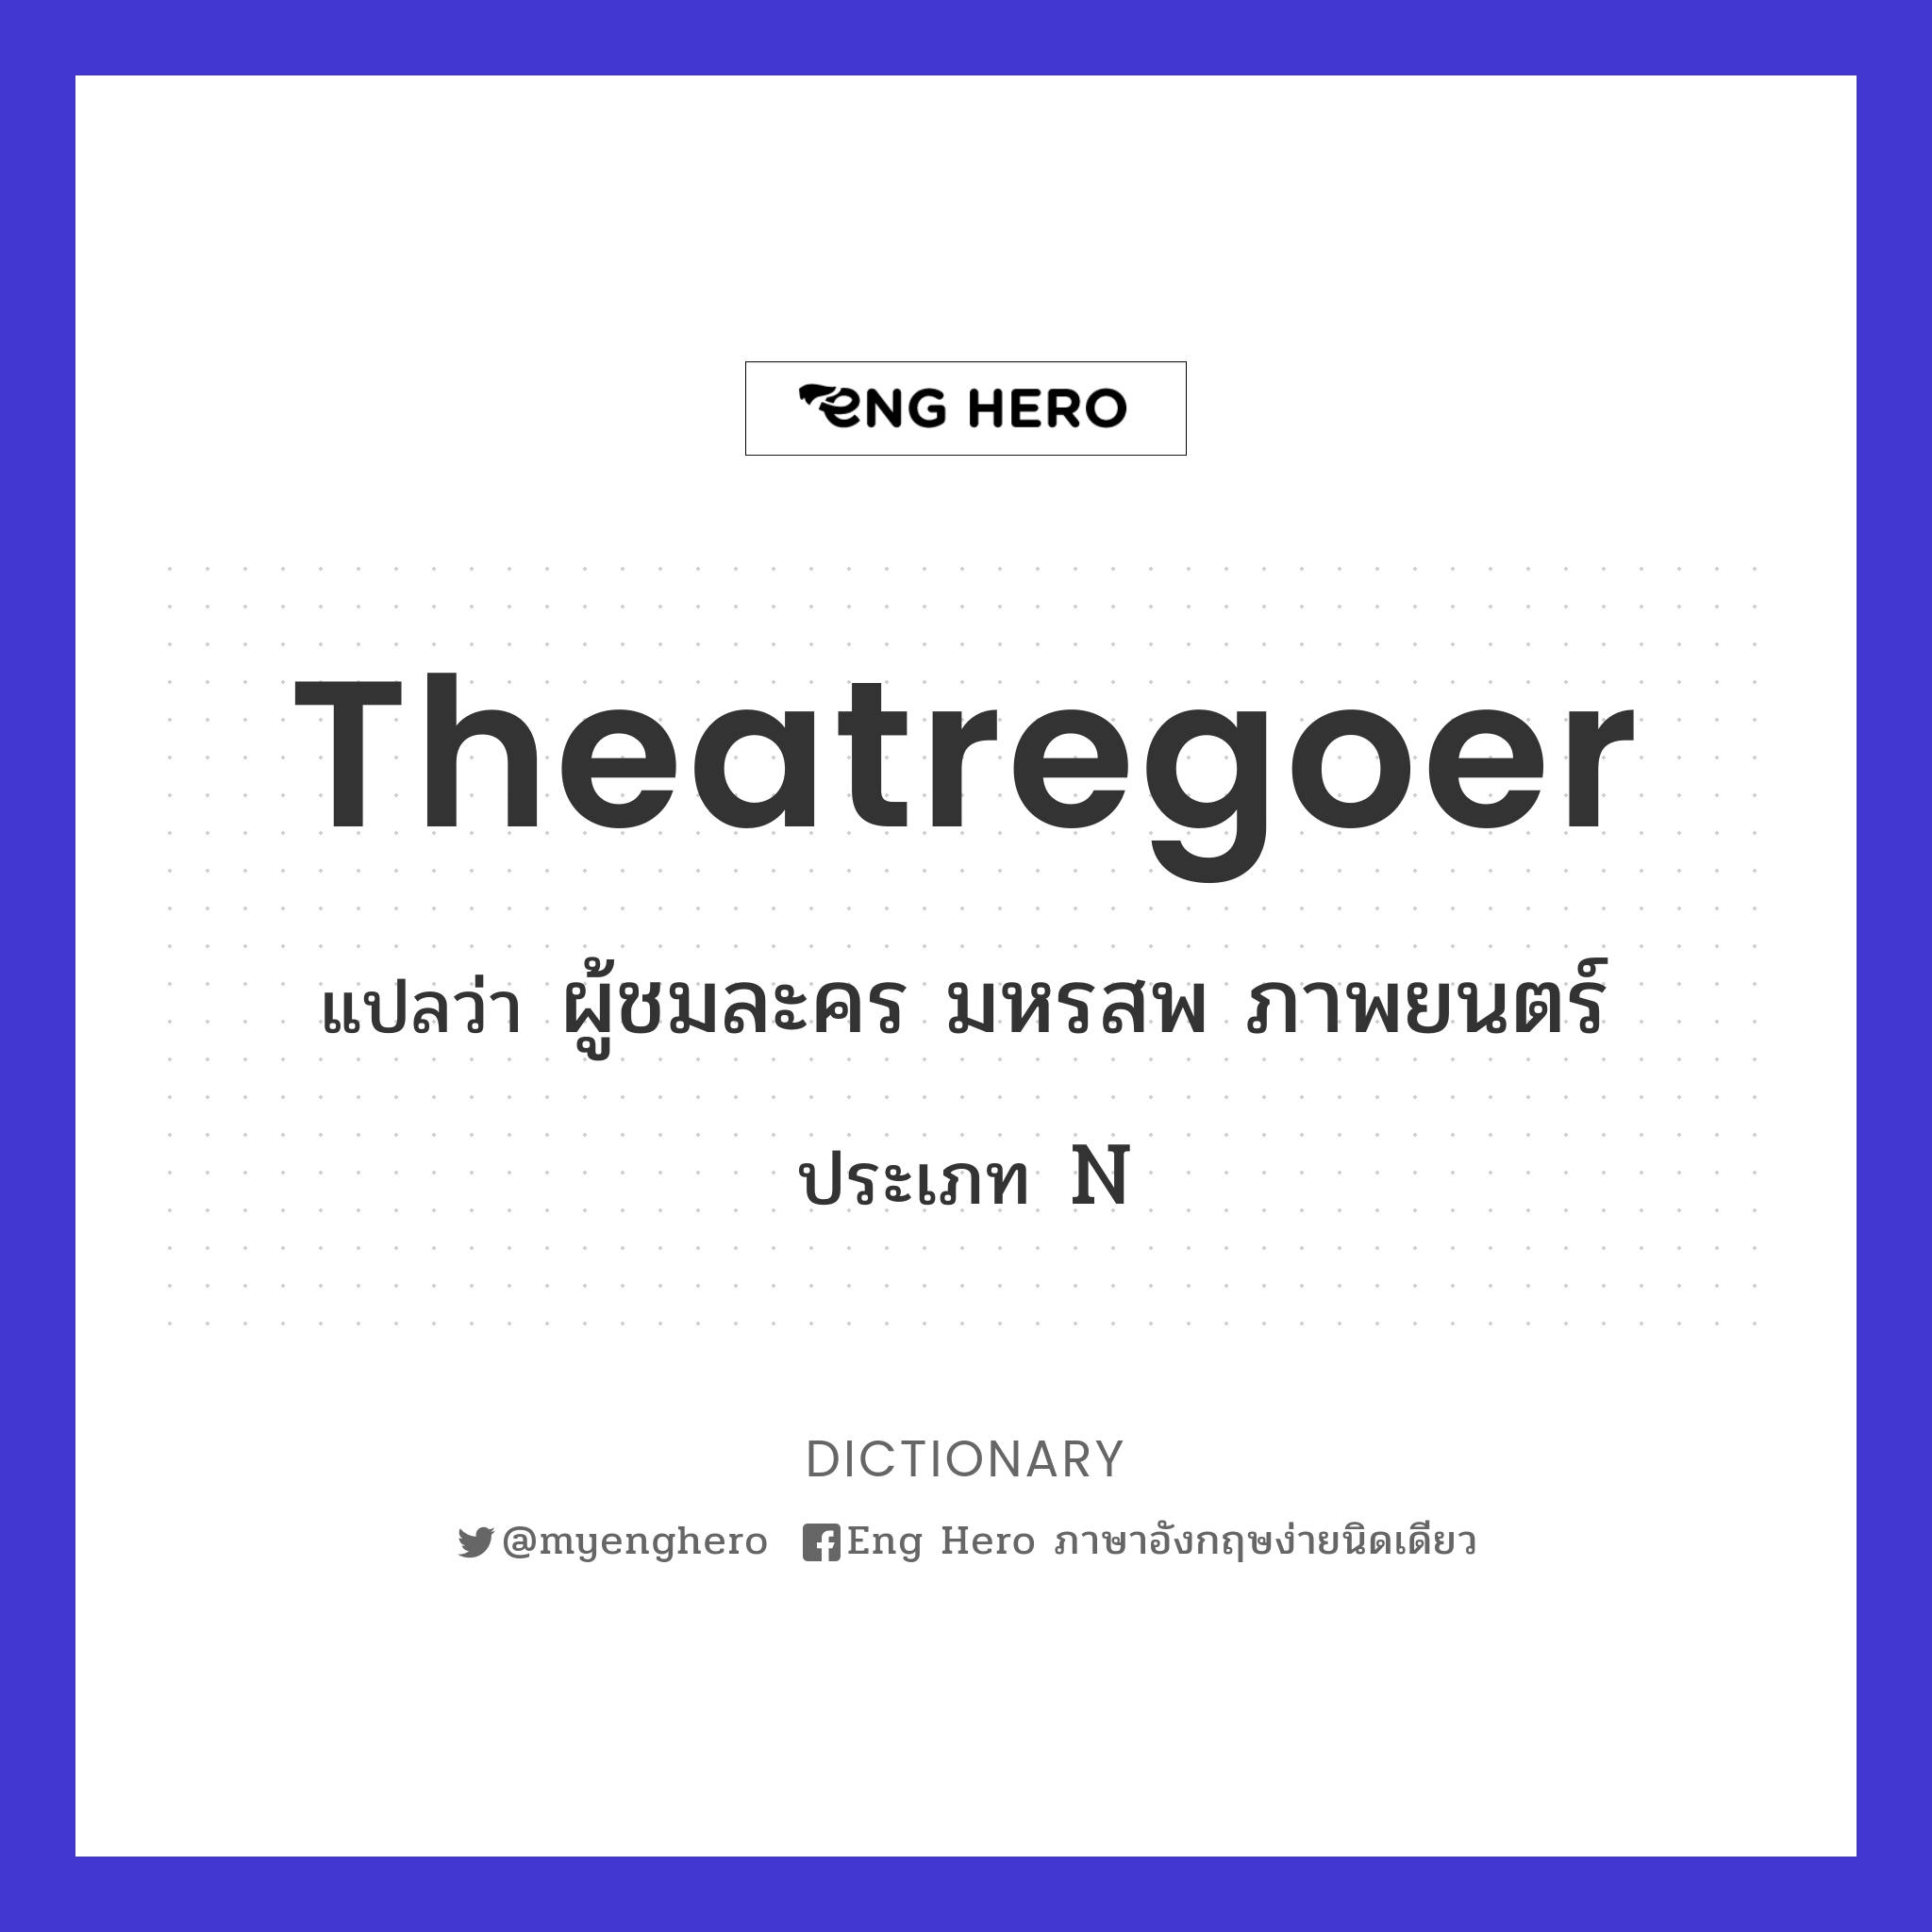 theatregoer